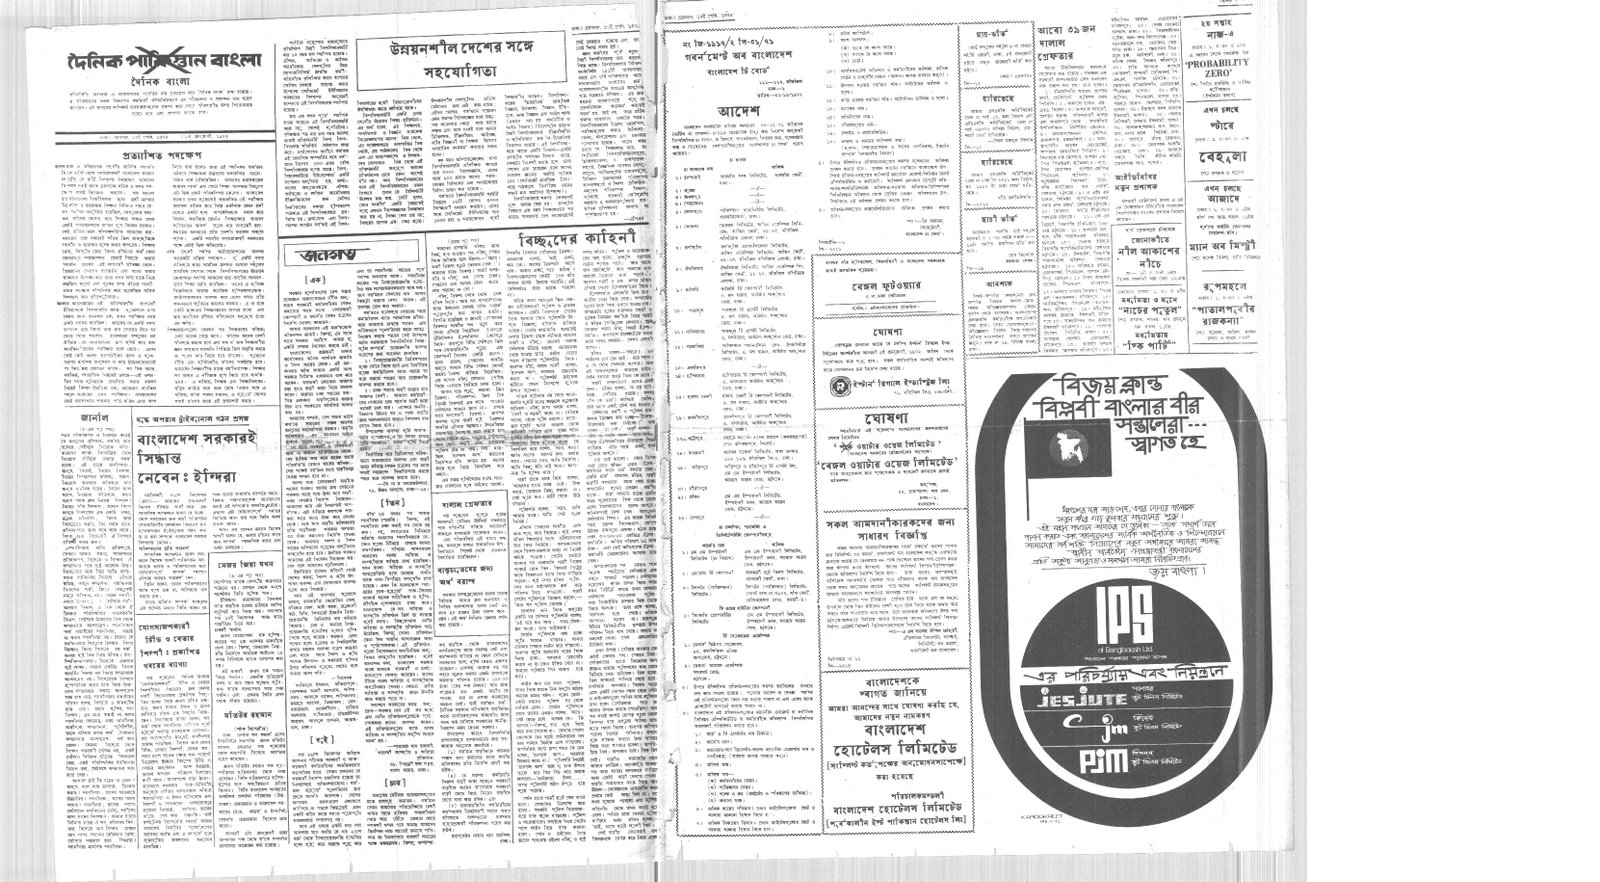 2JAN1972-DAINIK BANGLA-Regular-Page 2 and 5